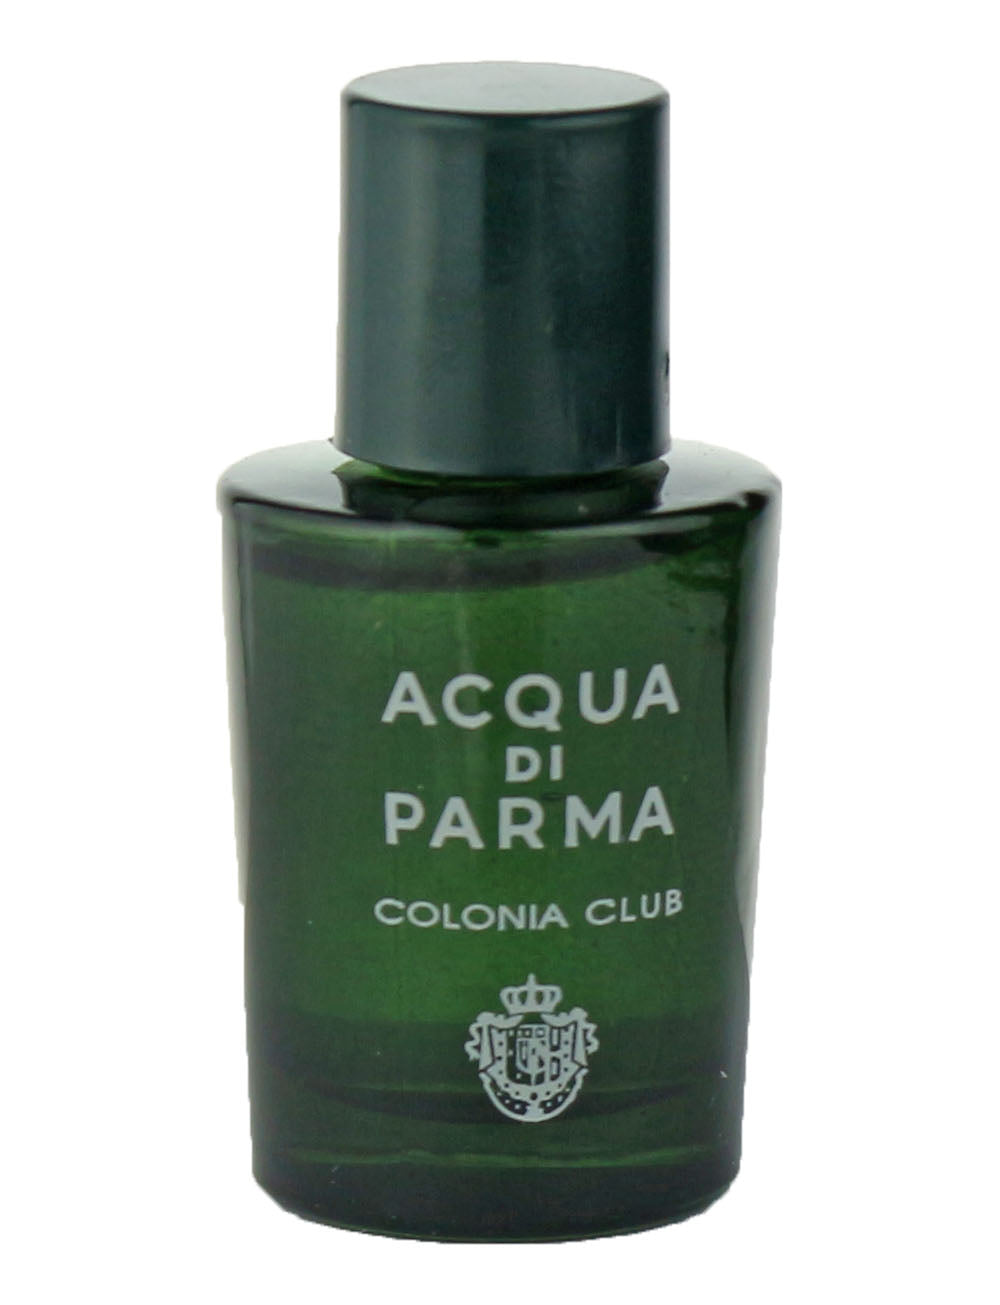 Acqua Di Parma 'Colonia club' Eau De Cologne 0.16 oz / 5 ml Mini